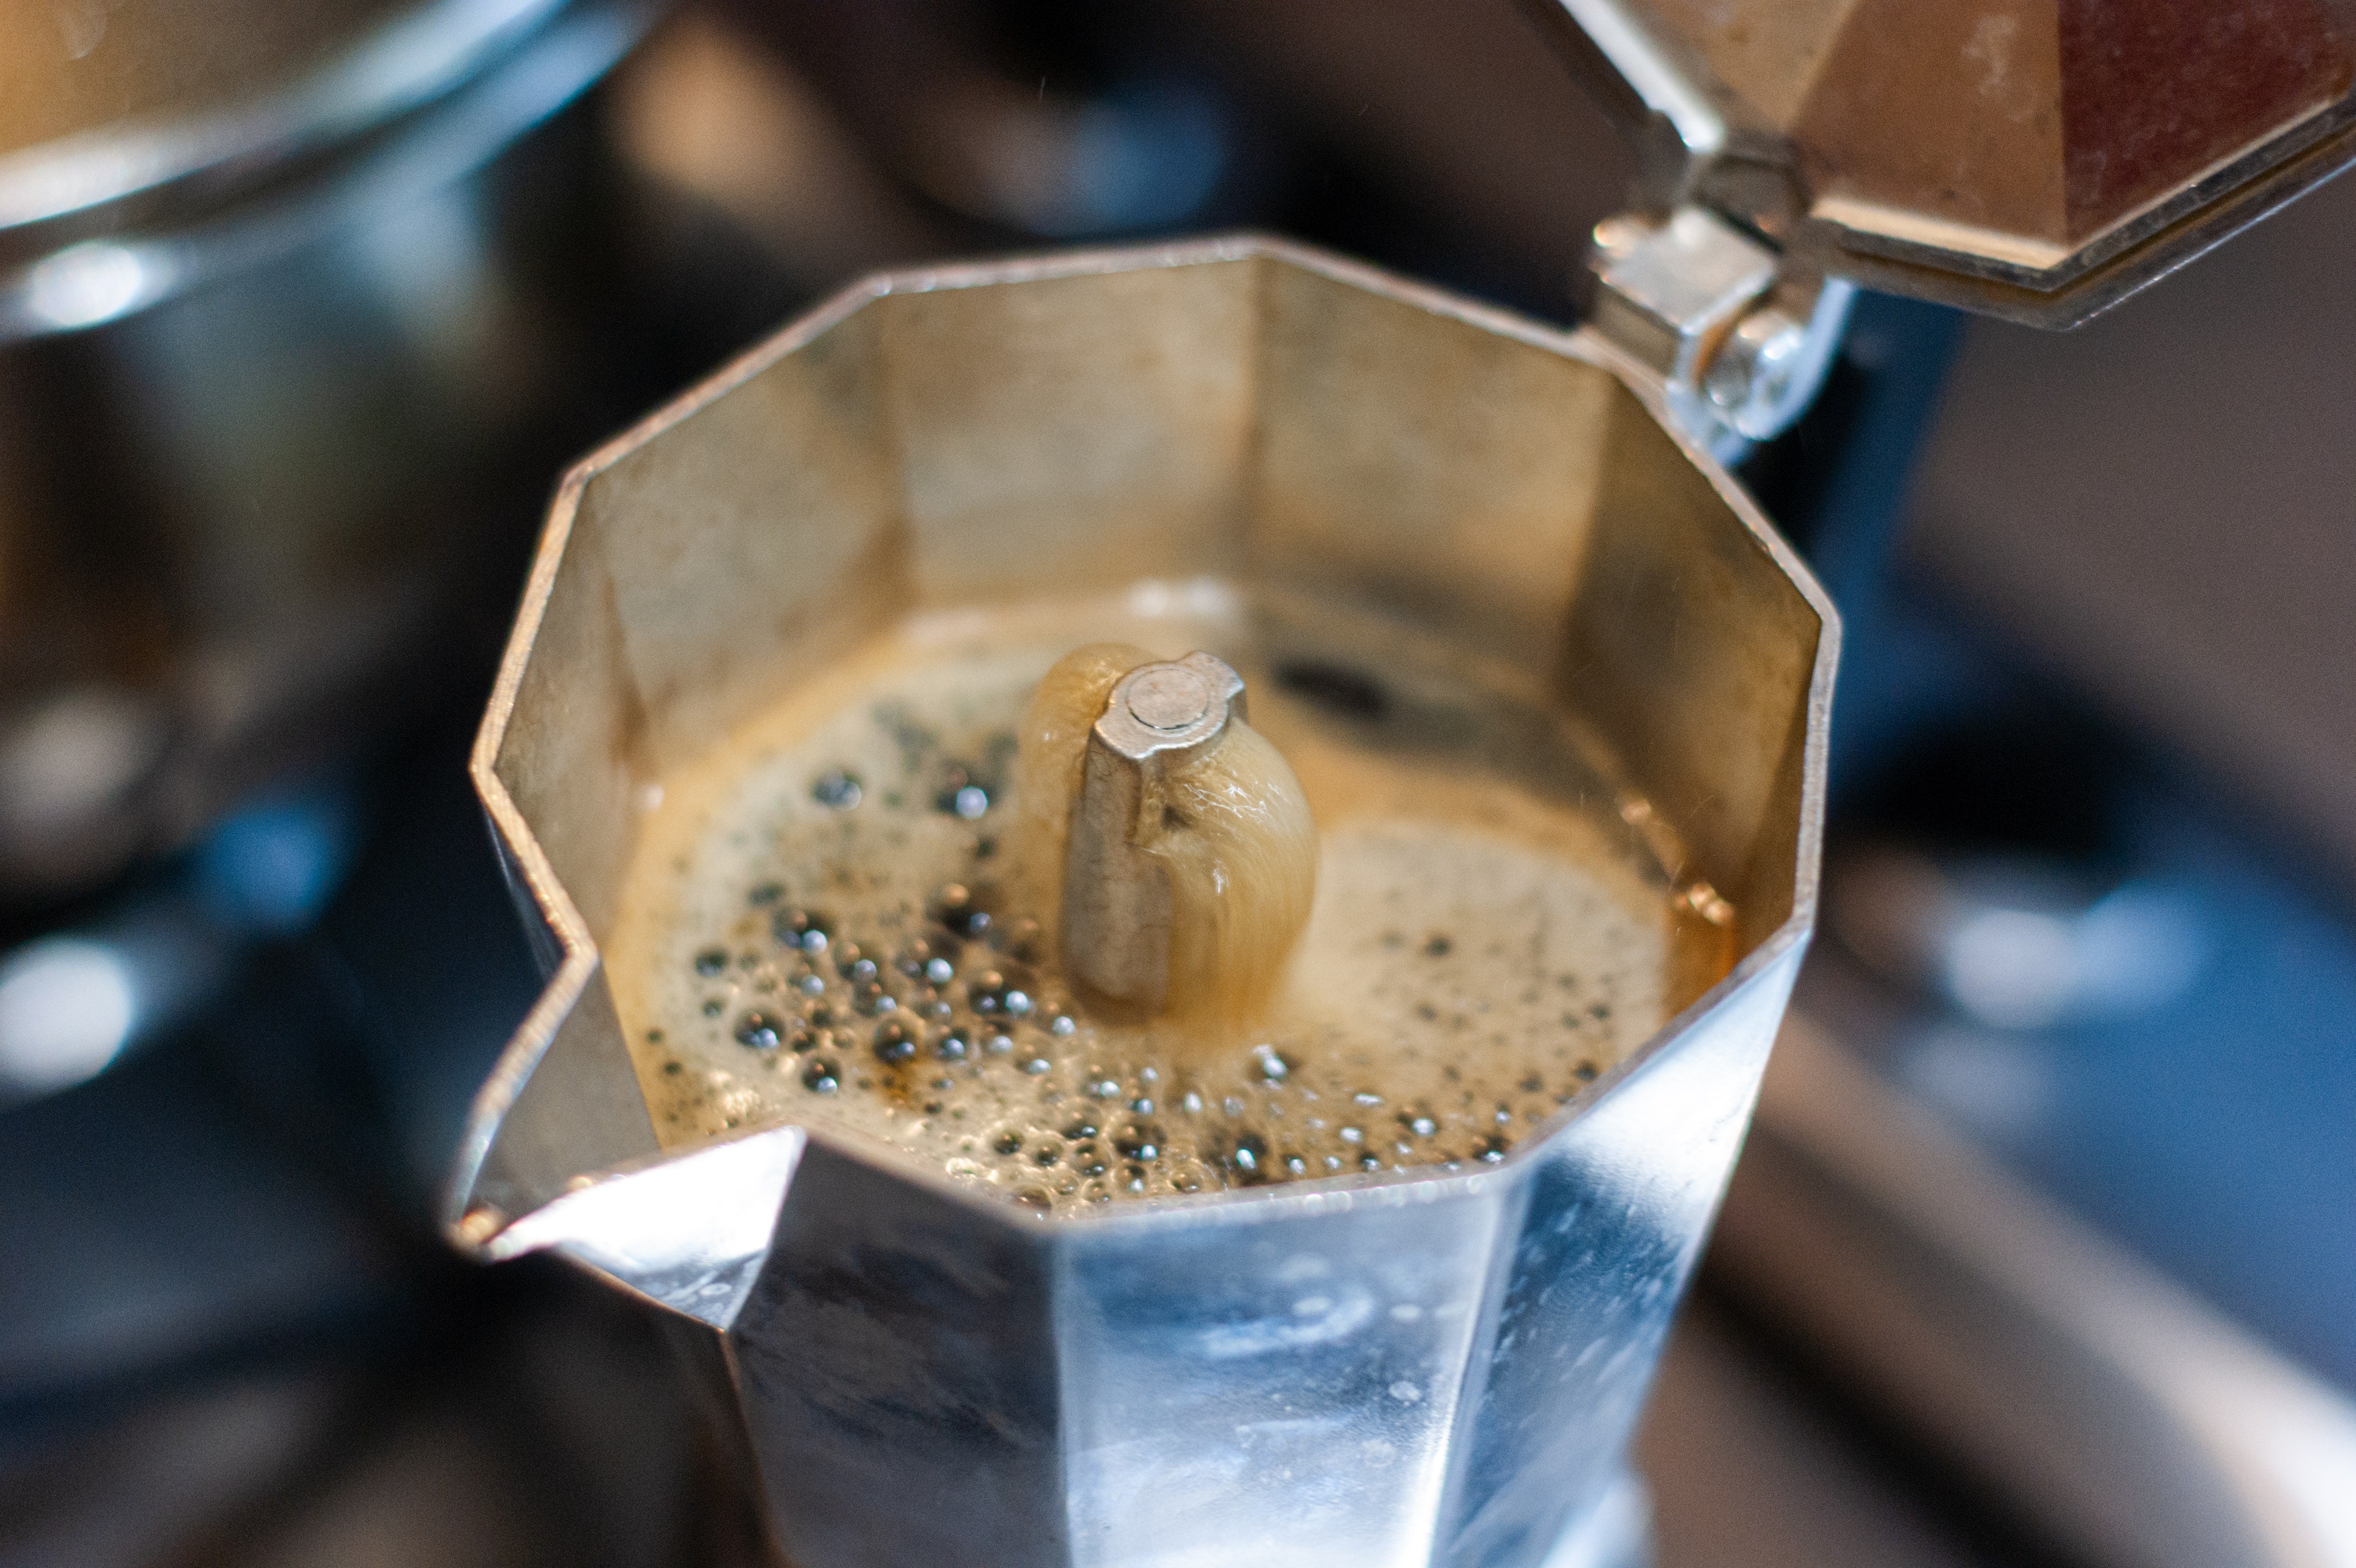 Bialetti vs LuxHaus: Stovetop Espresso Maker Comparison 